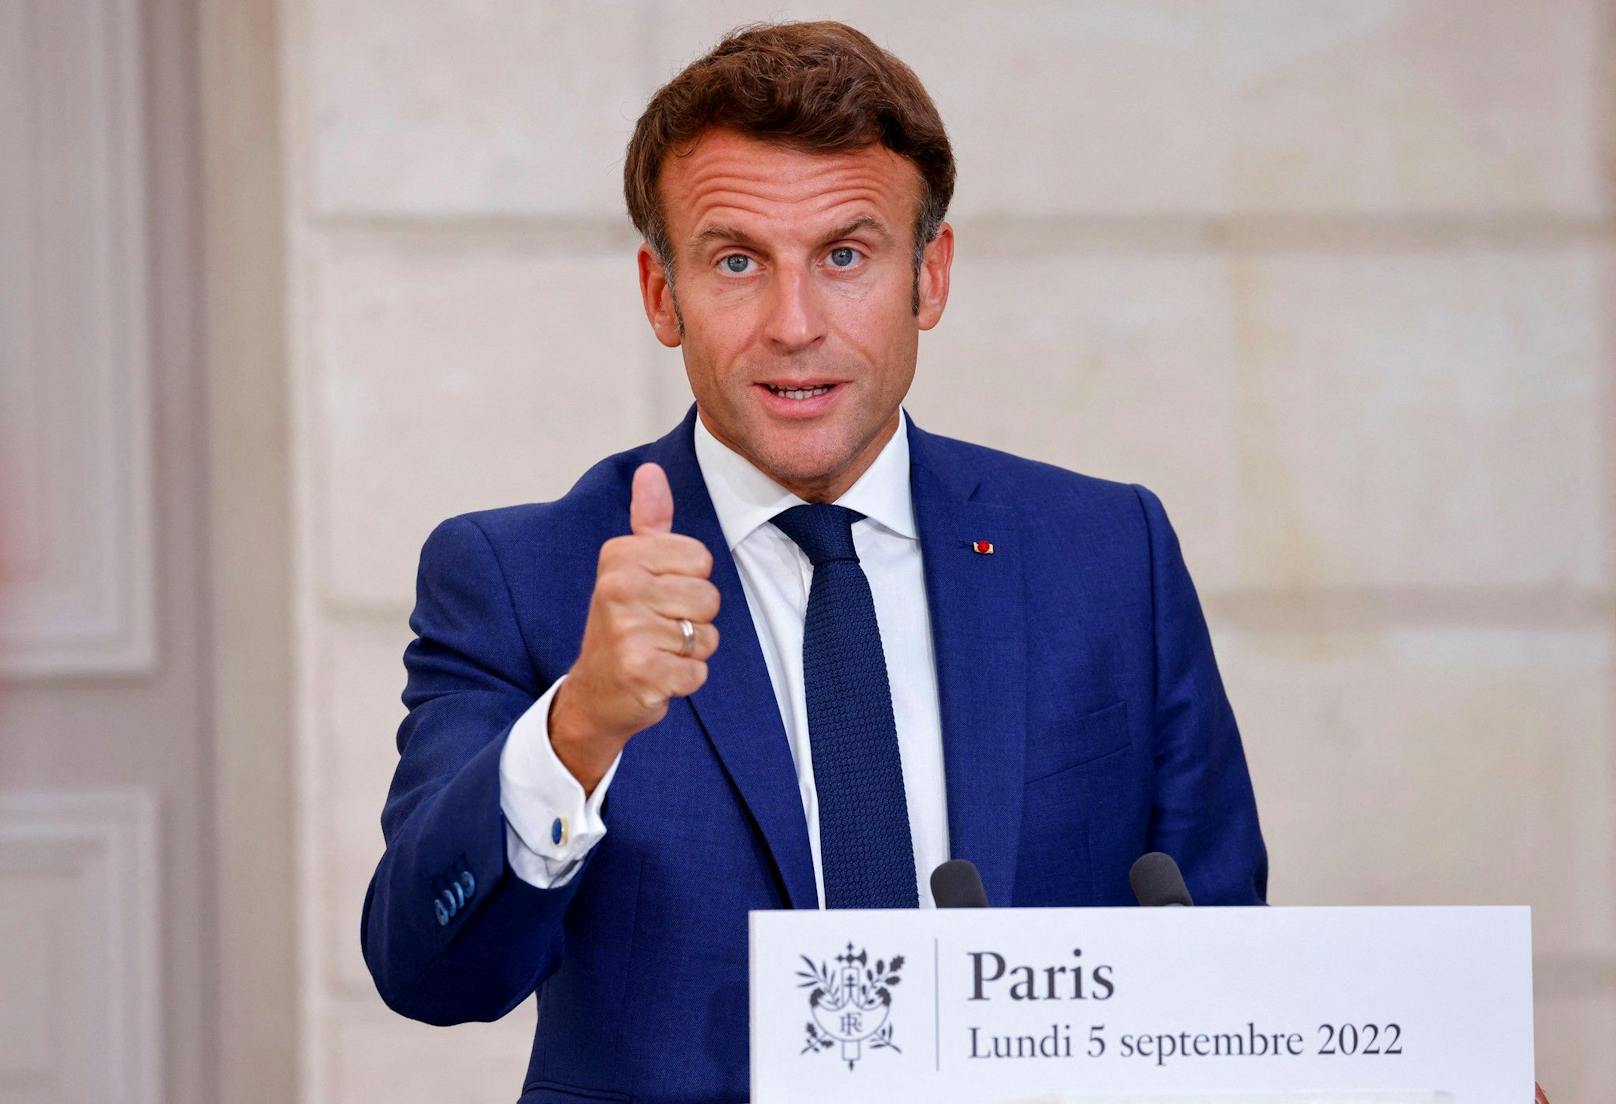 Der französische Präsident Macron will E-Sport im Lande fördern. Darum holt er mit der Blast Premier eines der größten Shooter-Turniere nach Paris.